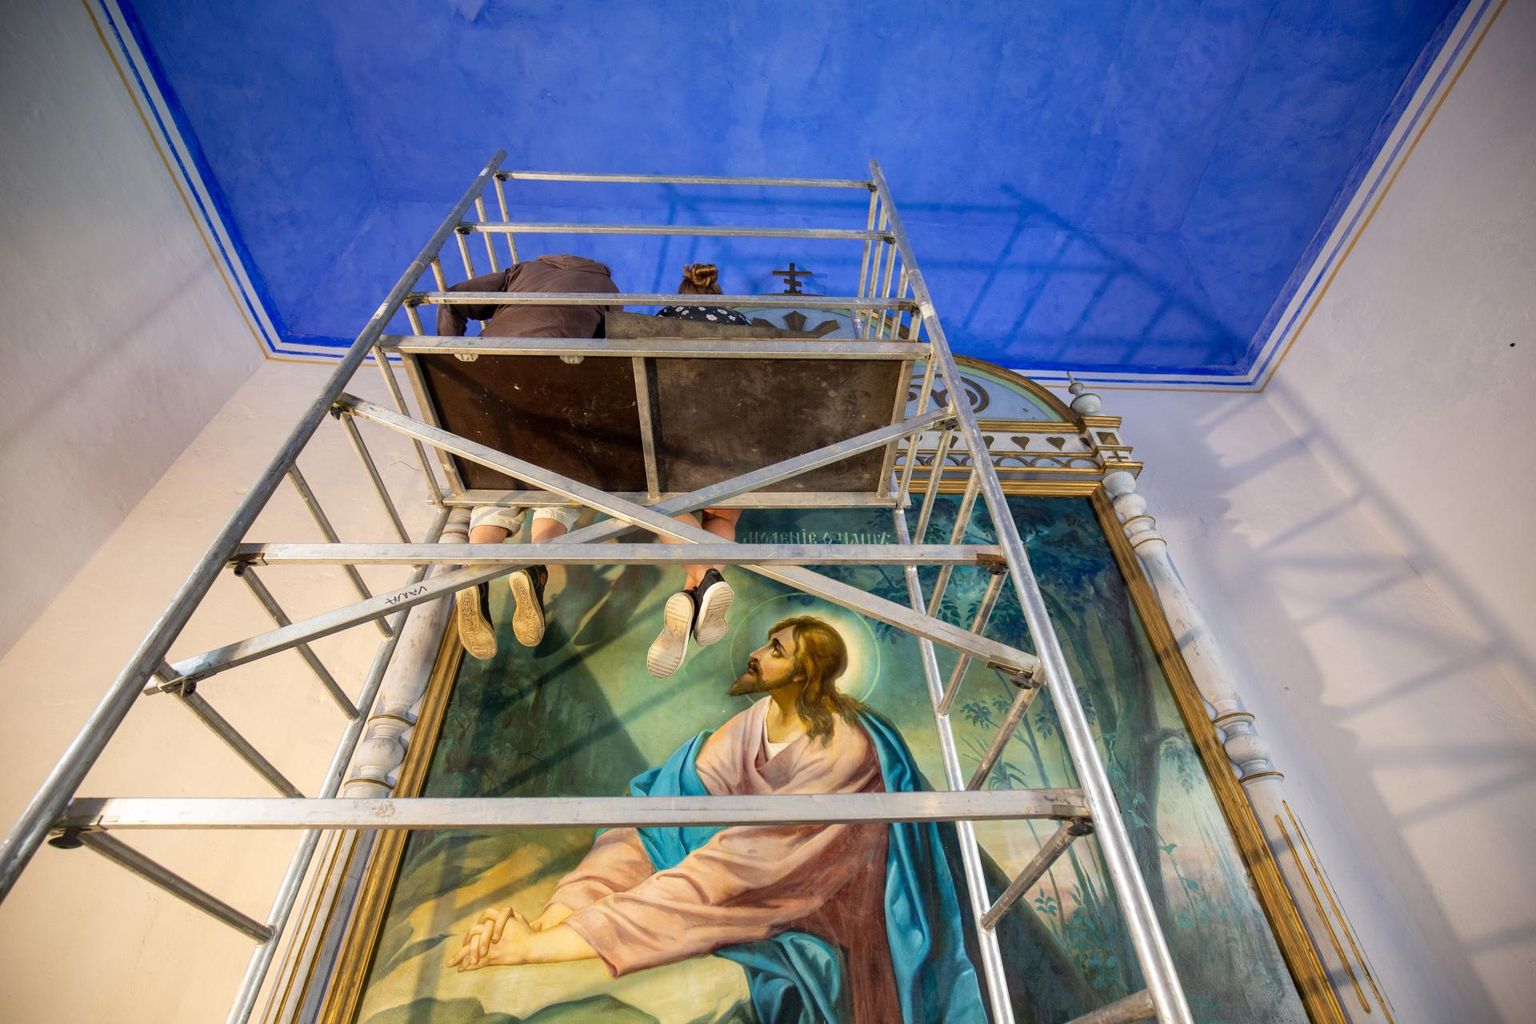 Neljapäeval toimetasid kiriku aujärje maali ja ikooniraamide kallal Eesti kunstiakadeemia ja Tartu kõrgema kunstikooli Pallas tudengid.